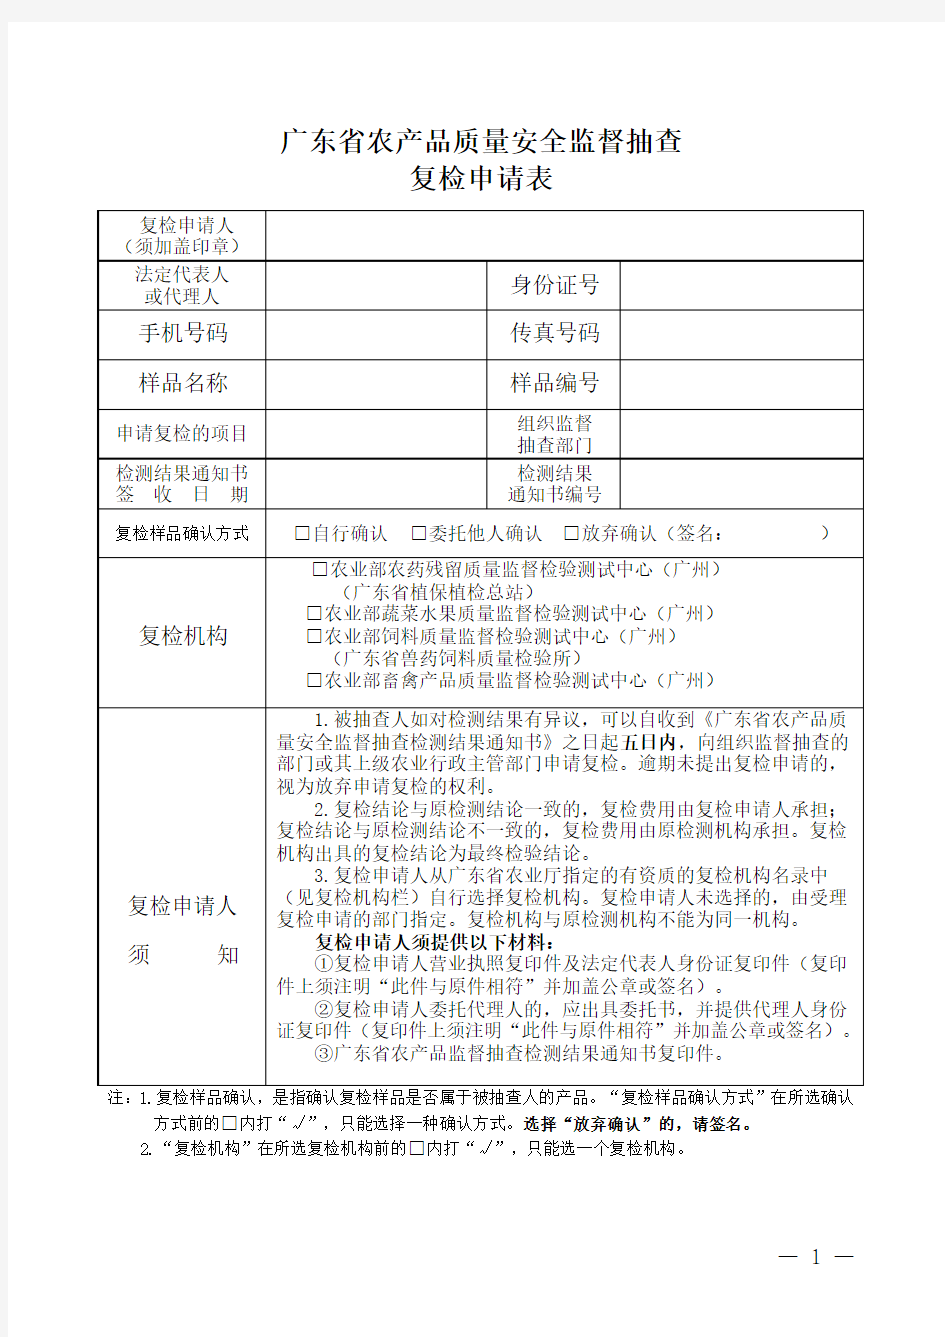 广东省农产品质量安全监督抽查